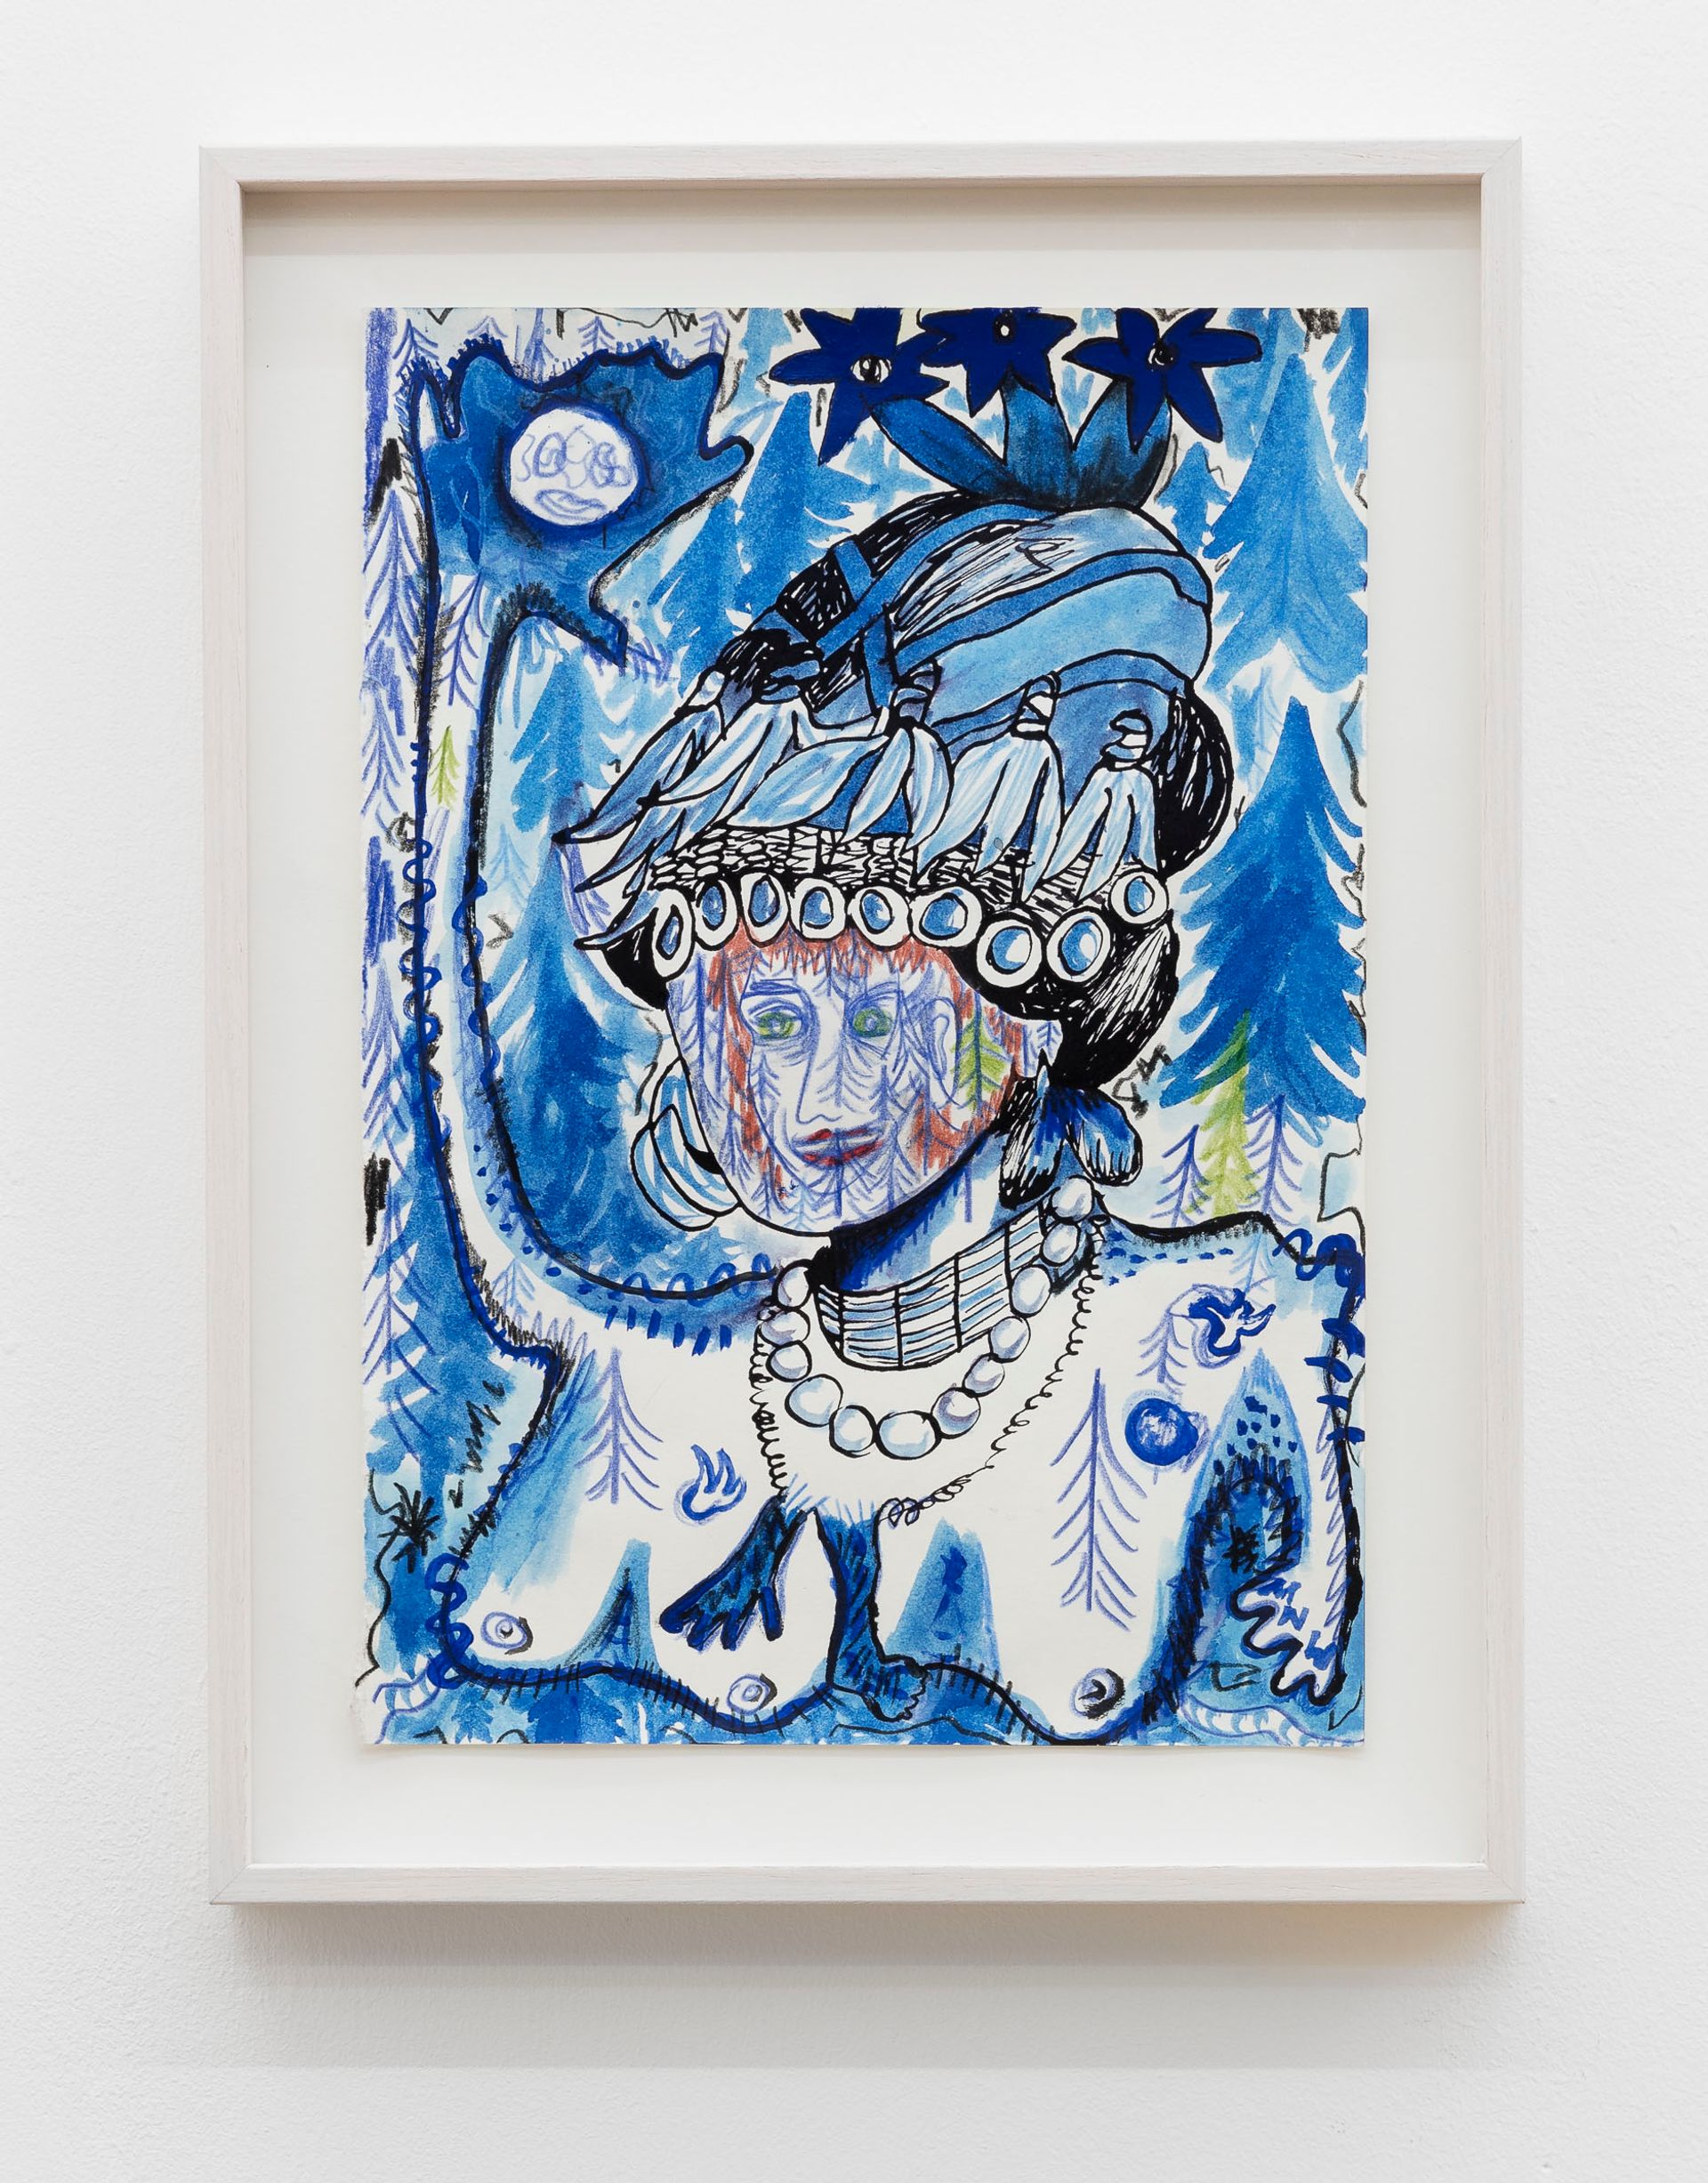 Anna McCarthy, Königin der Nacht, 2018, crayon, gouache, indian ink on paper, 29.5 × 21.7 cm 